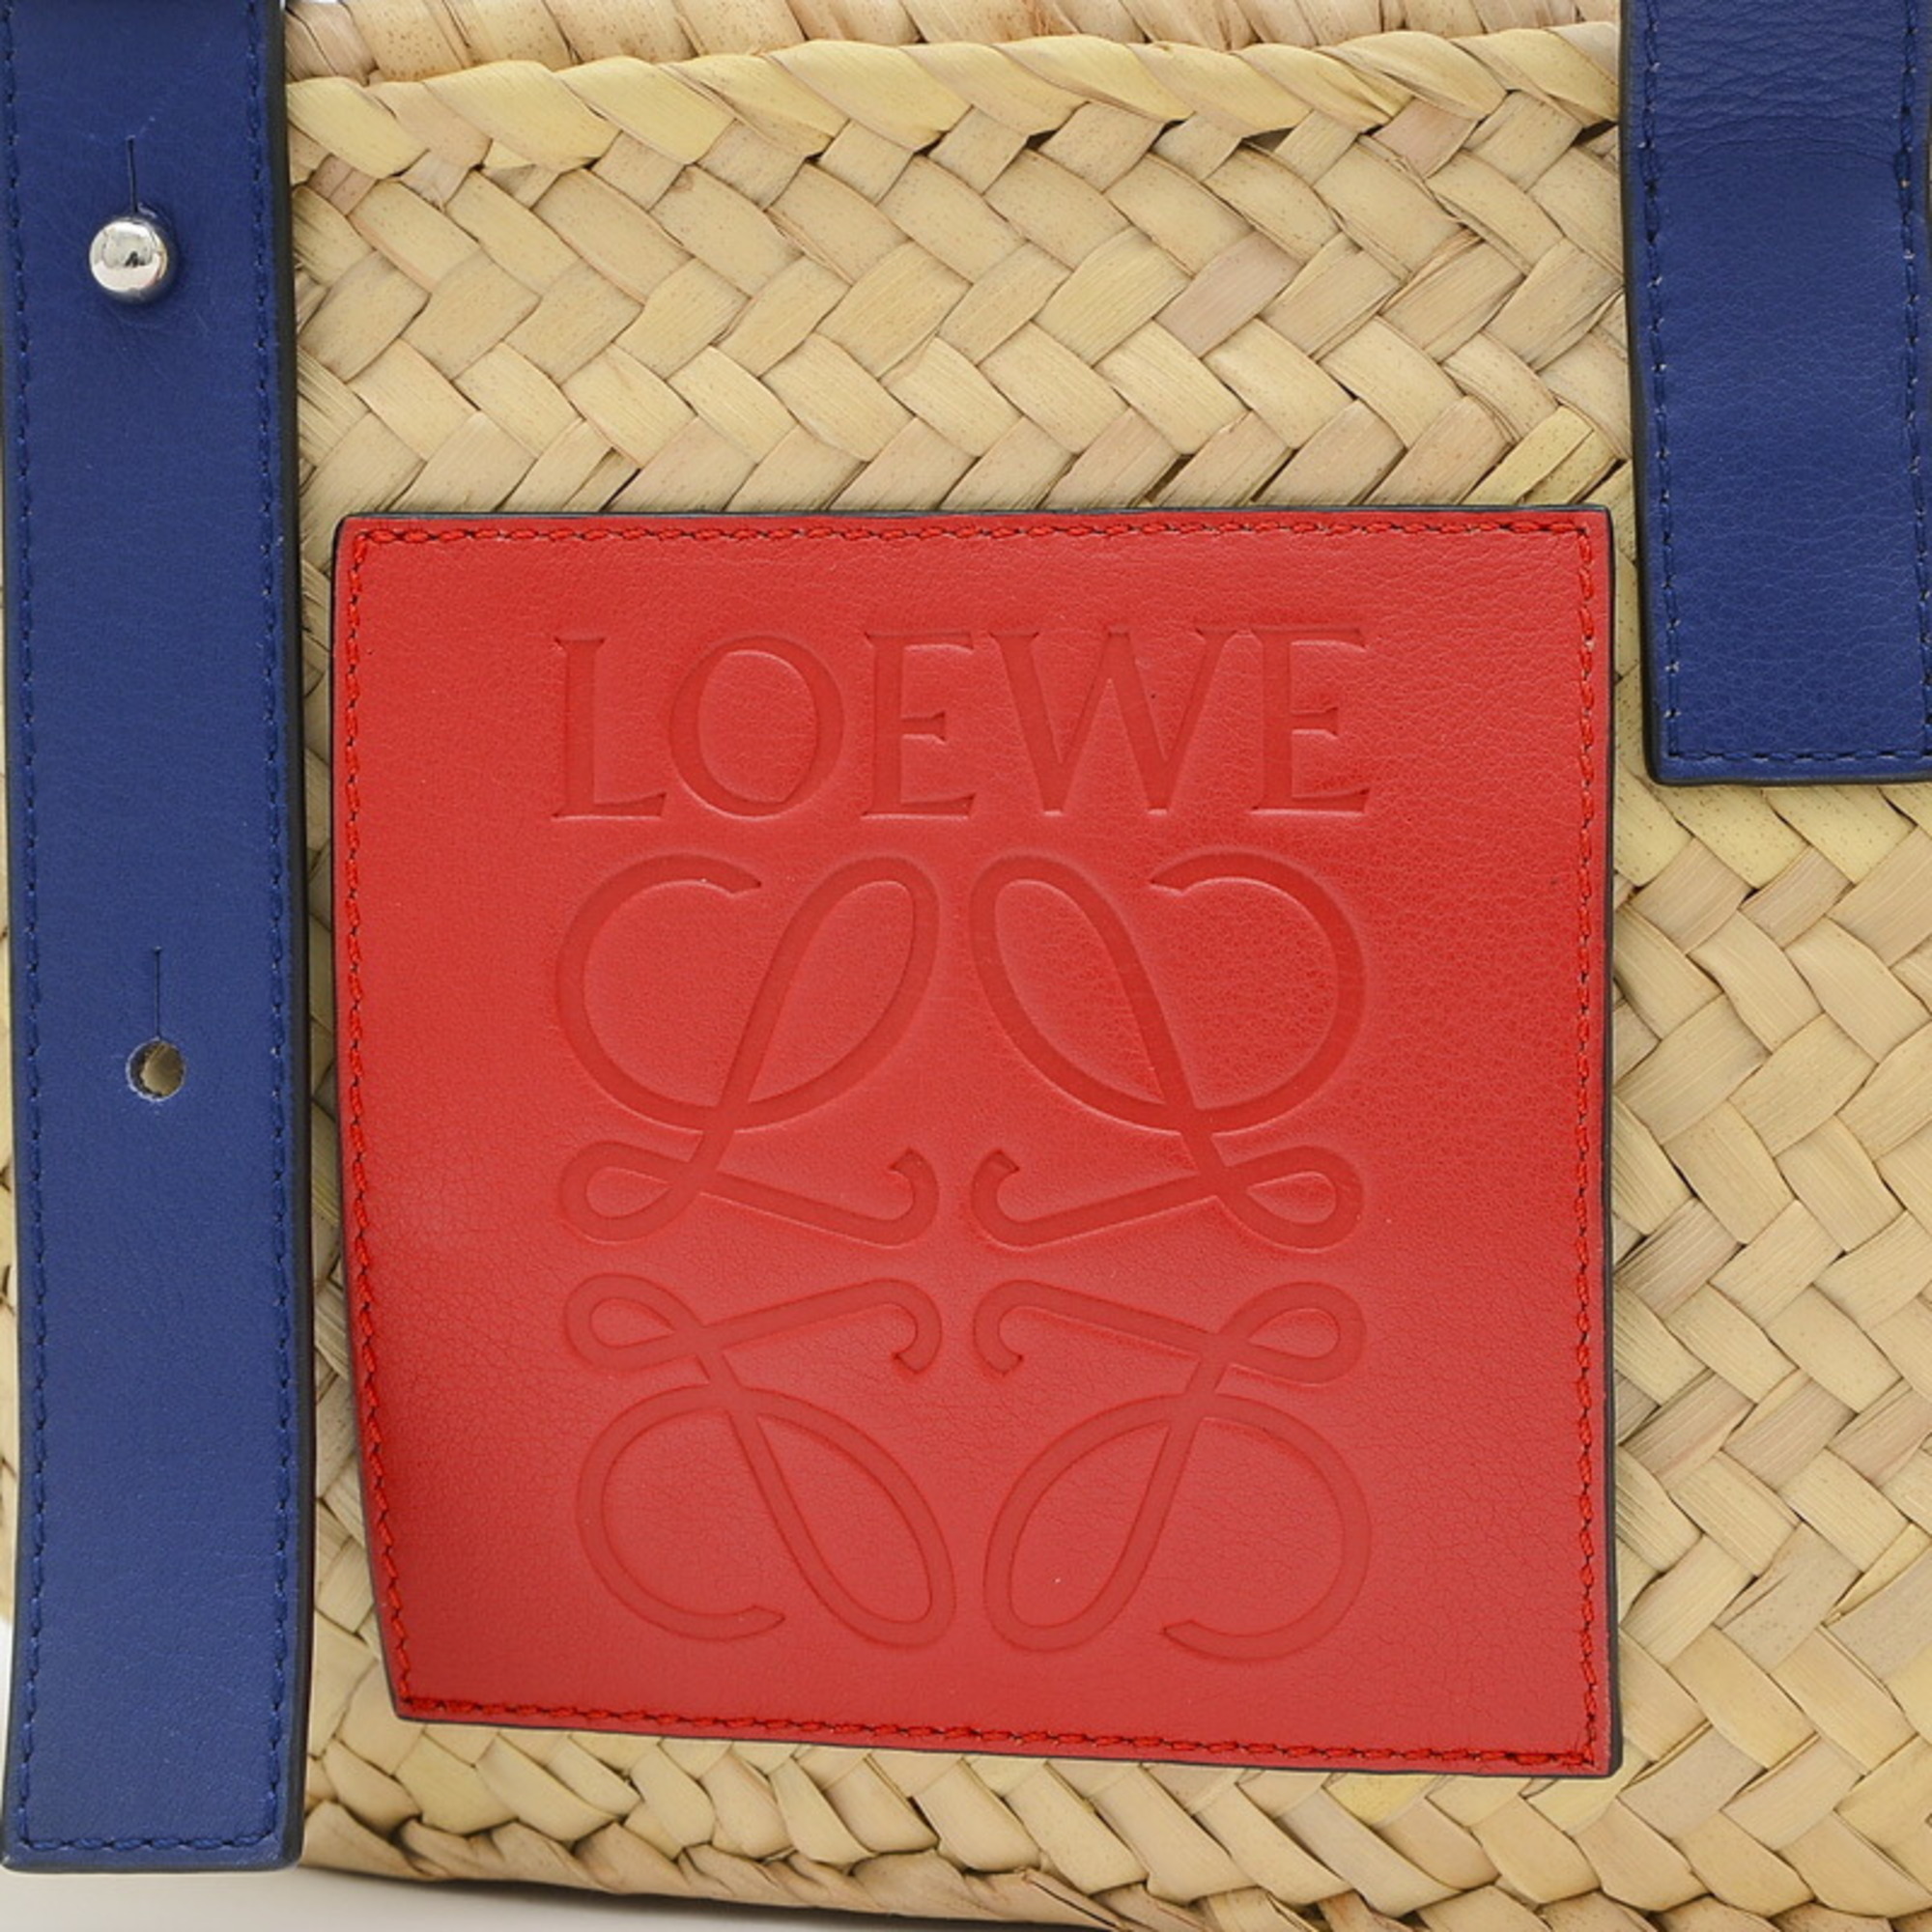 Loewe Basket Bag Small Tote Blue Red 337.02BS93